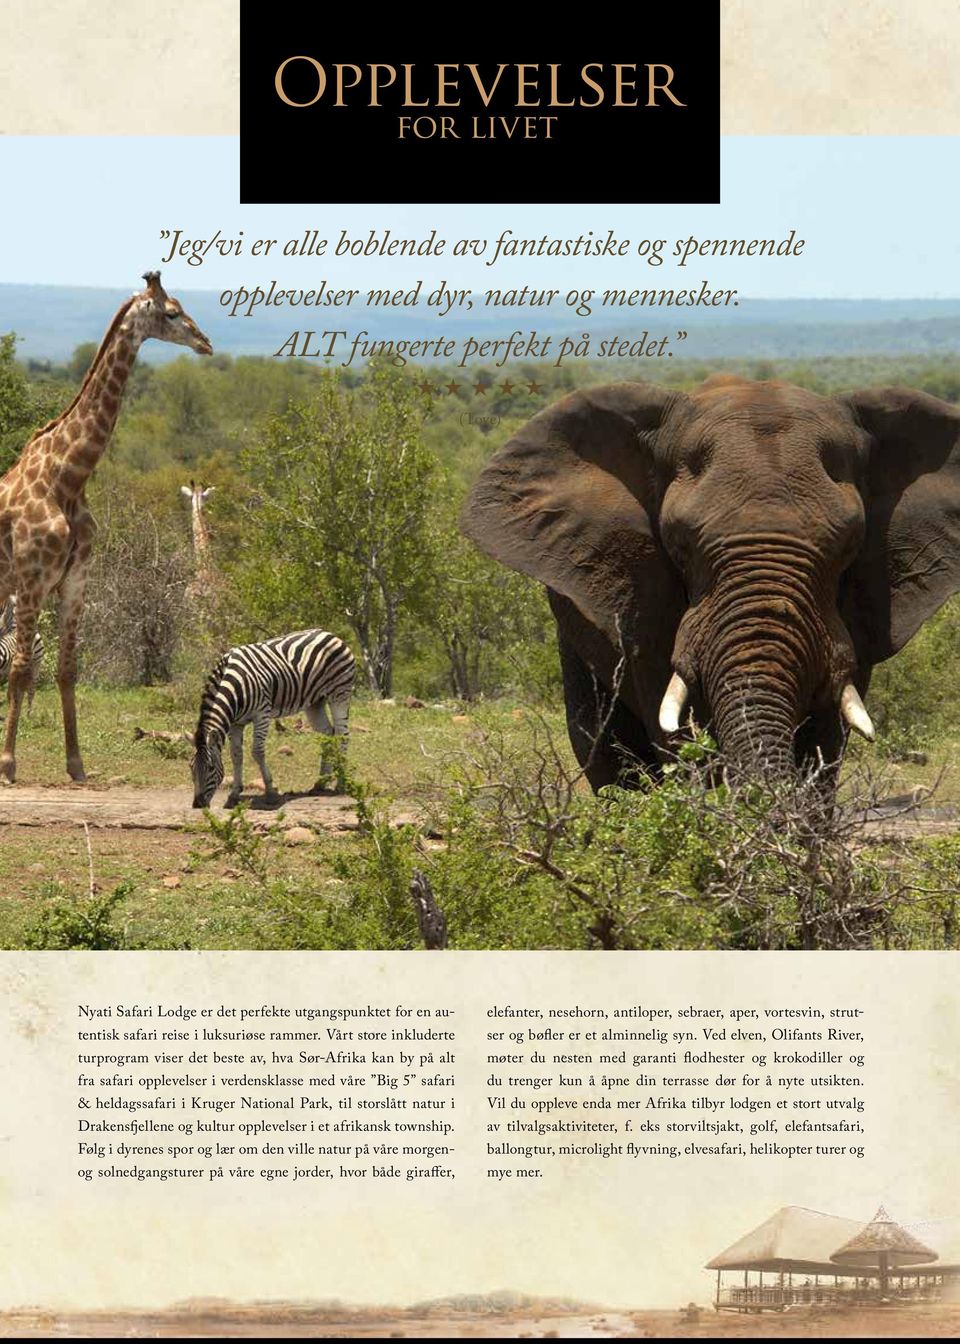 Vårt store inkluderte turprogram viser det beste av, hva Sør-Afrika kan by på alt fra safari opplevelser i verdensklasse med våre Big 5 safari & heldagssafari i Kruger National Park, til storslått